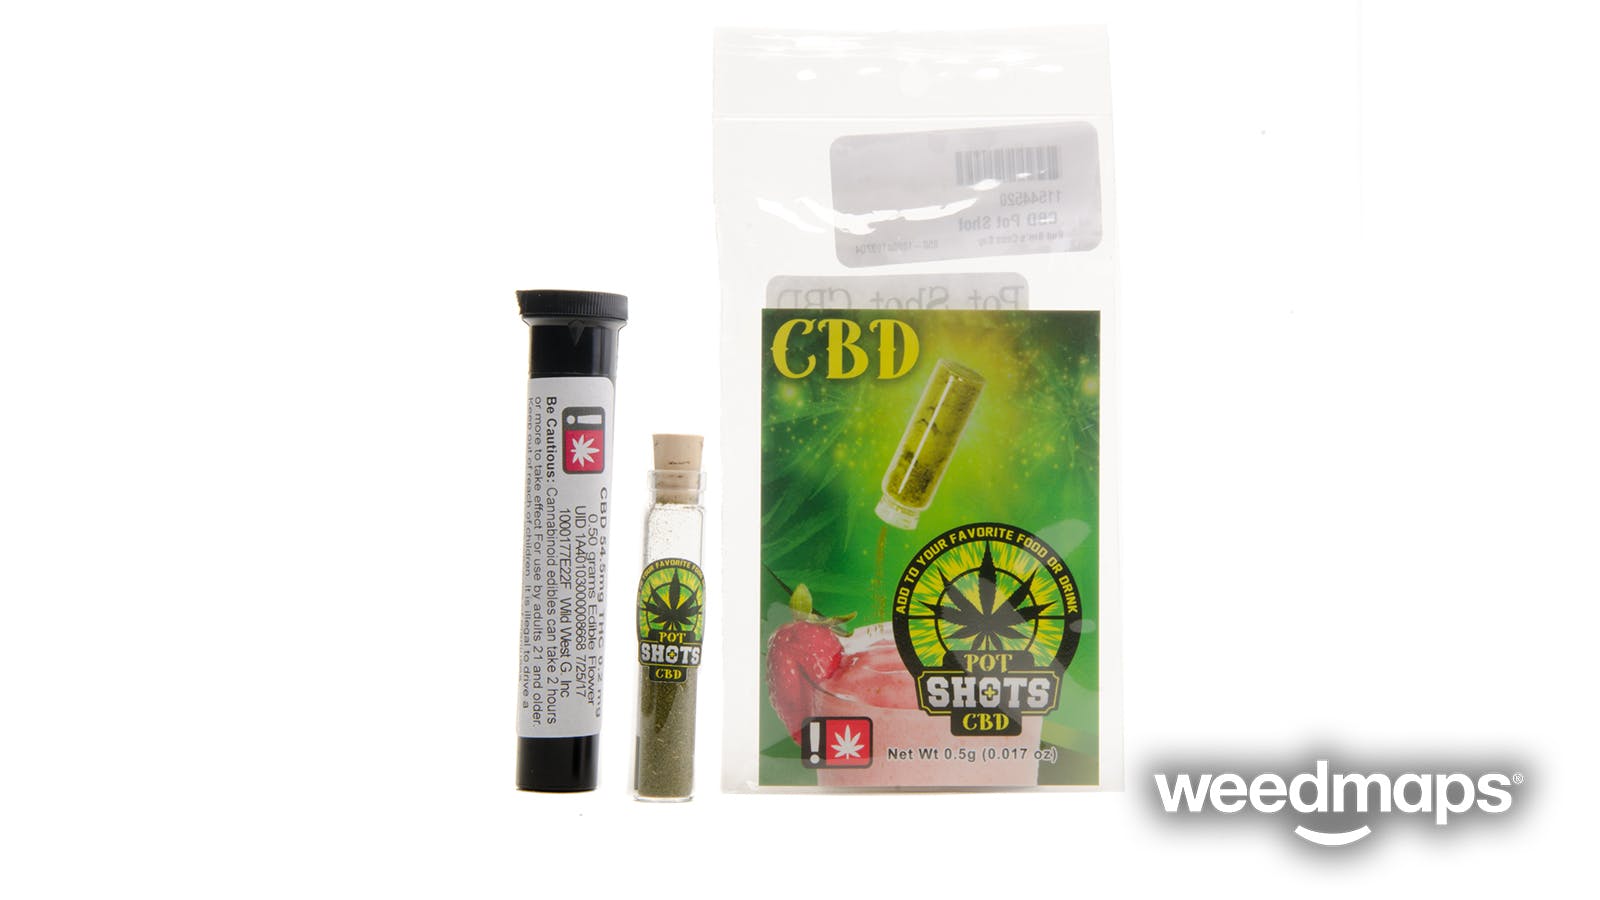 marijuana-dispensaries-nodak-green-prairie-in-eugene-cbd-pot-shot